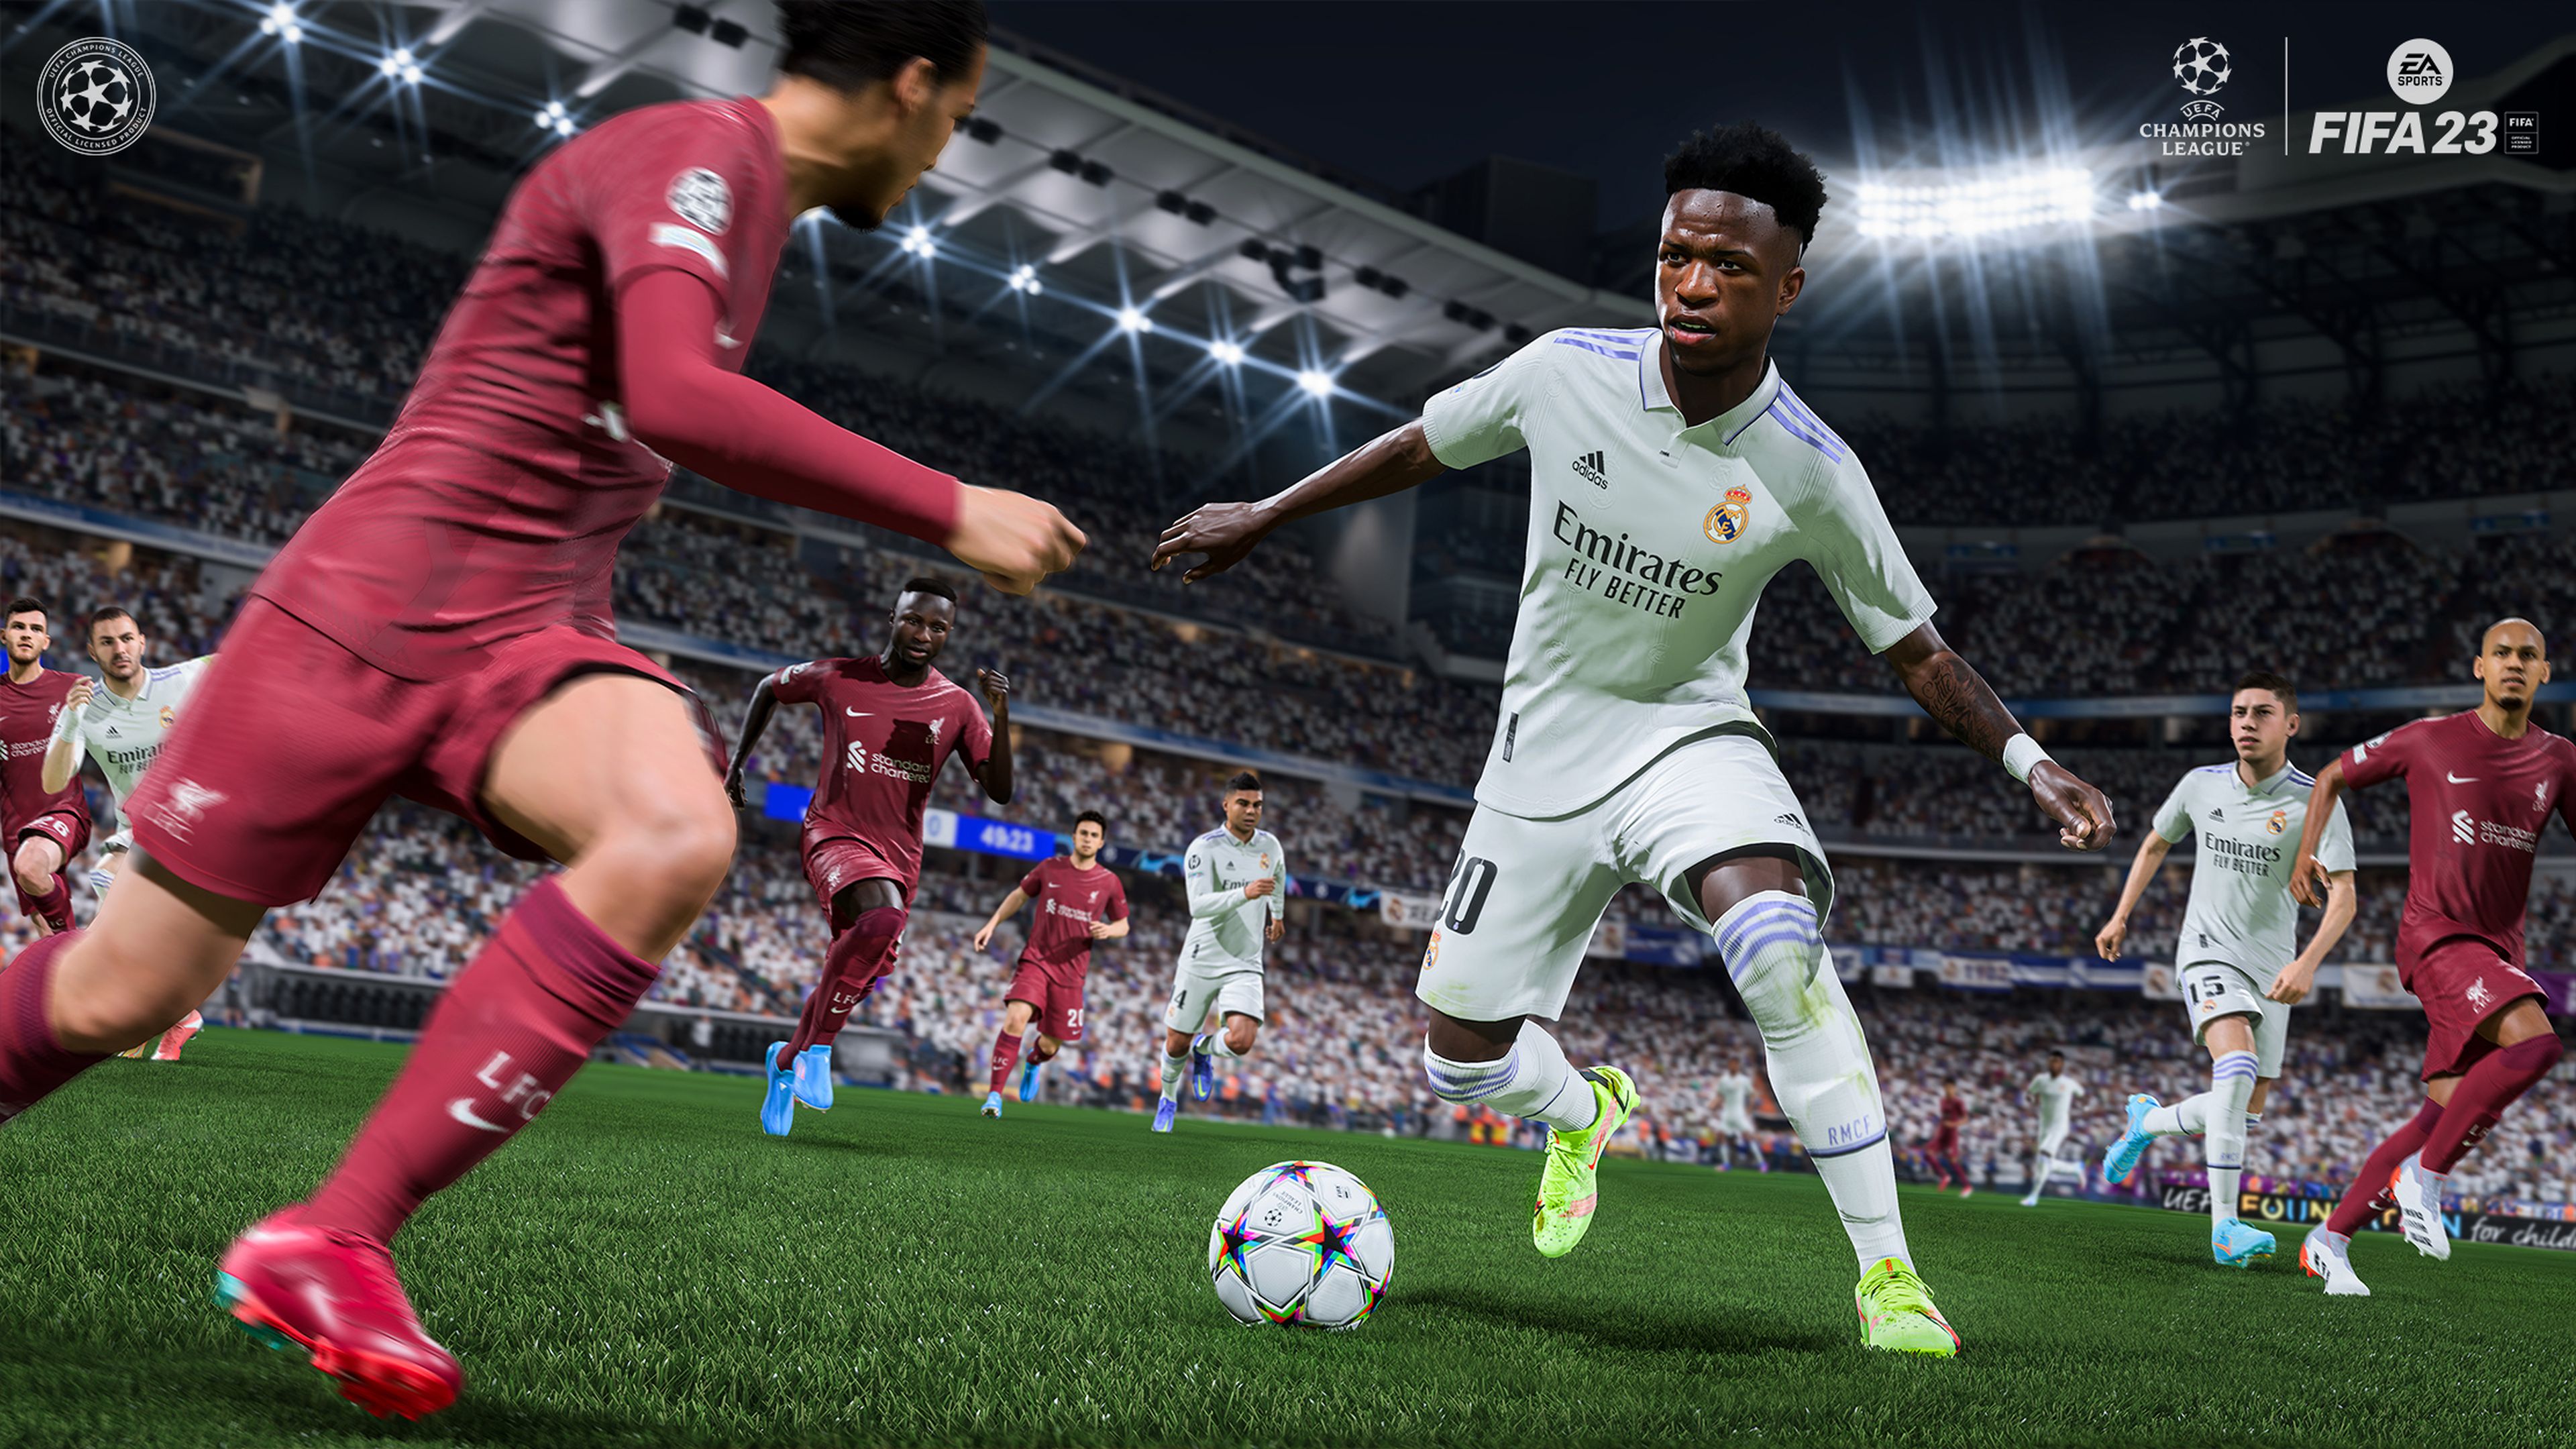 FIFA 23 saltará al césped el 30 de septiembre e incluirá multijugador cruzado y ligas femeninas